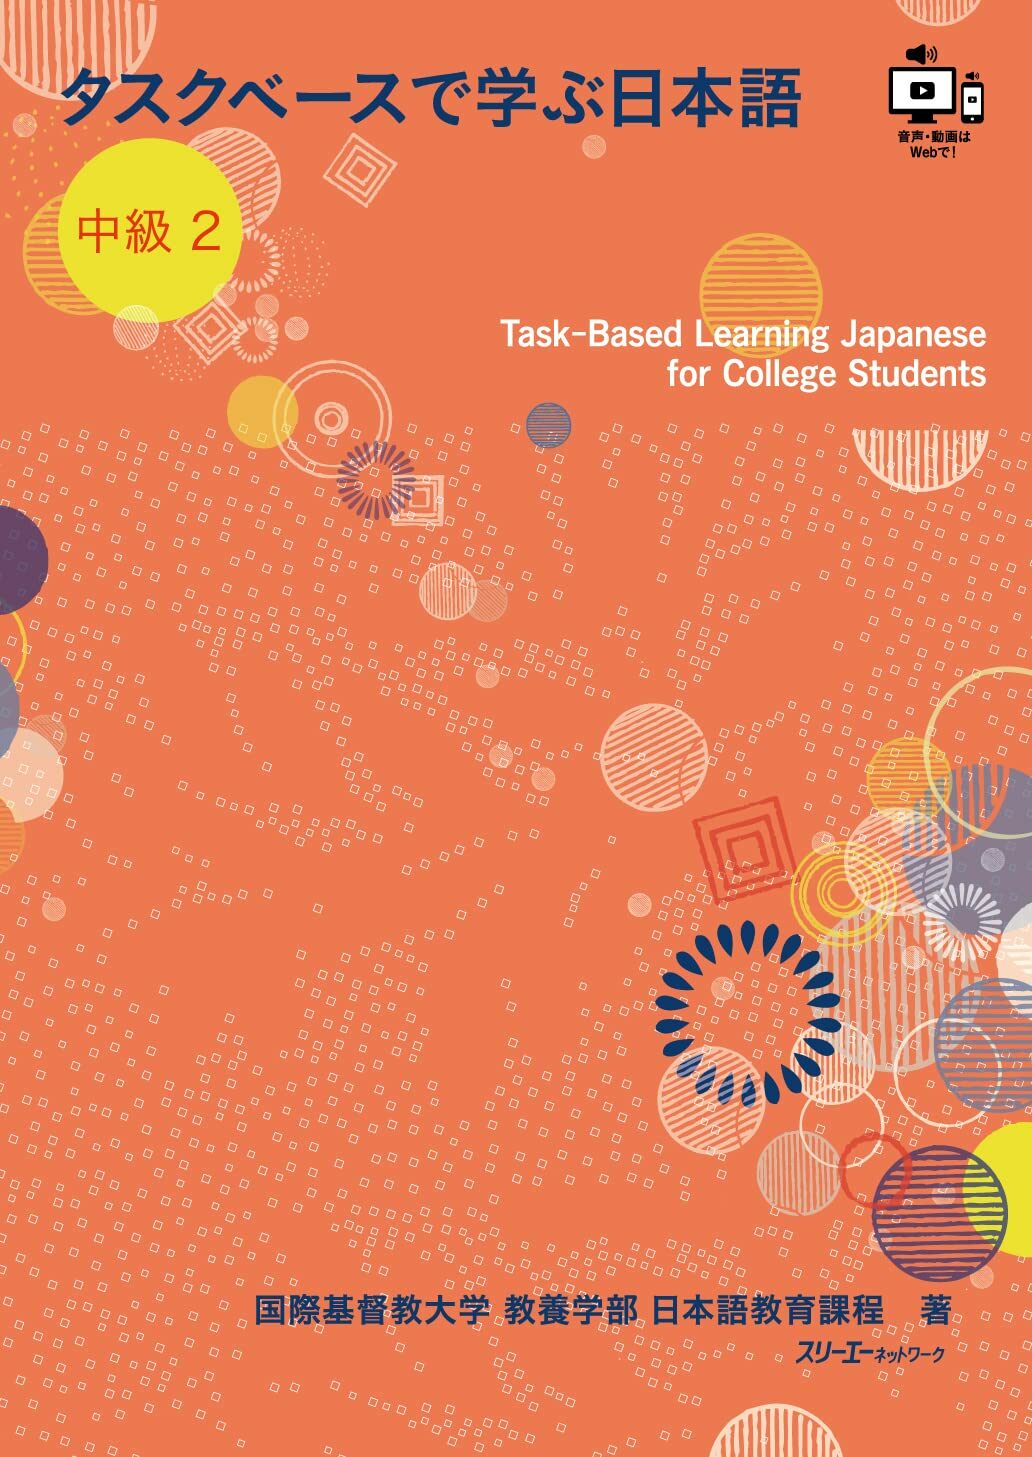 タスクベ-スで學ぶ日本語 中級2 ― Task?Based Learning Japanese for College Students